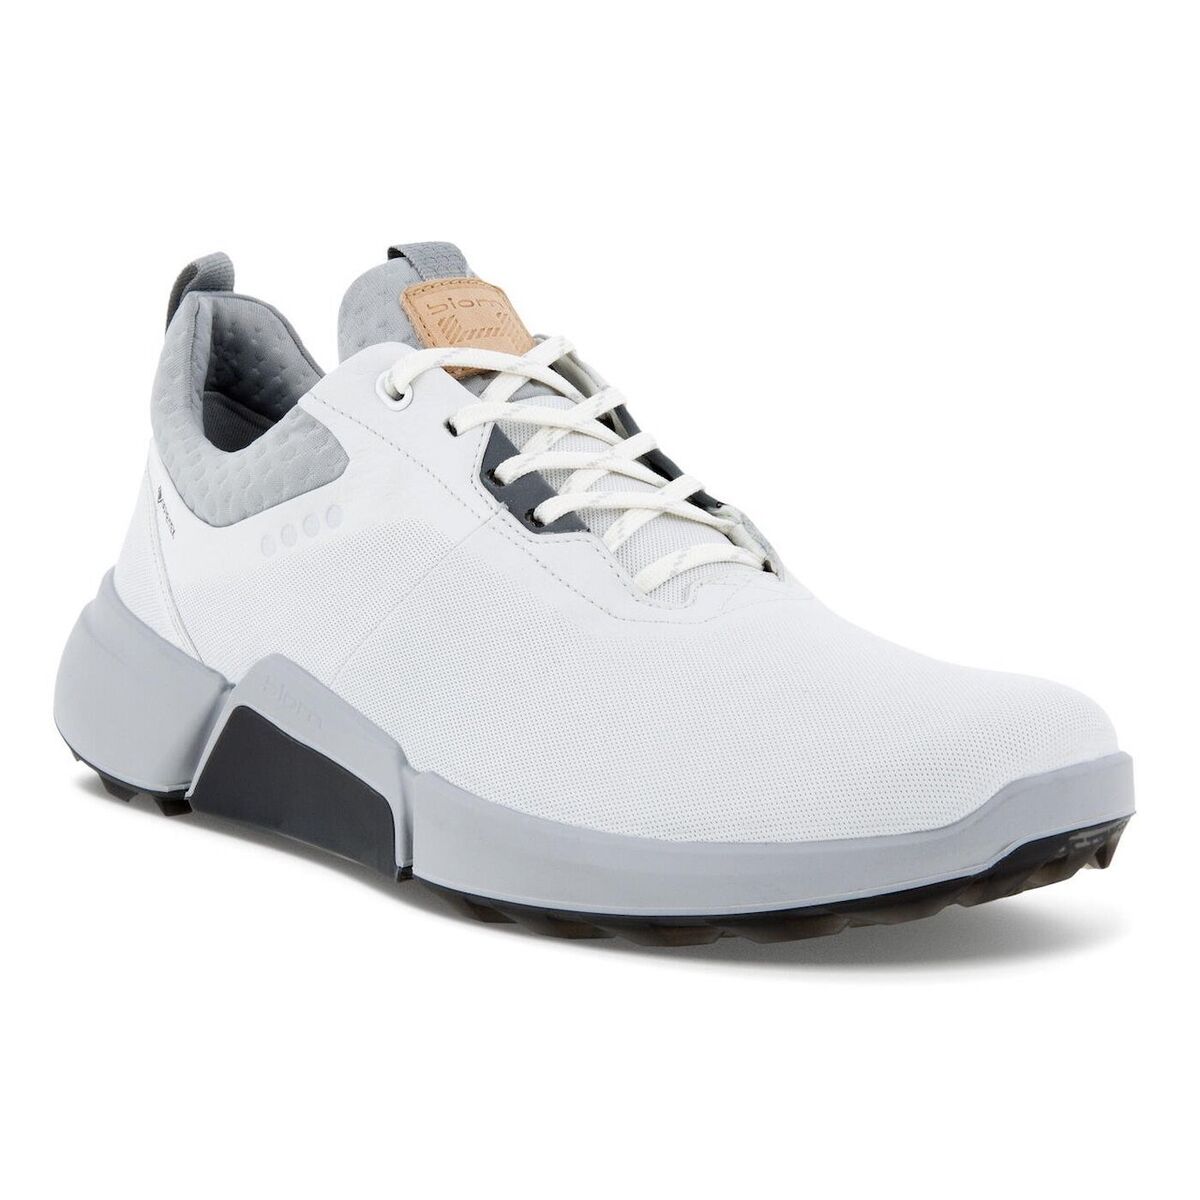 ECCO Golf Shoes That Golfers Swear By Golflink.com